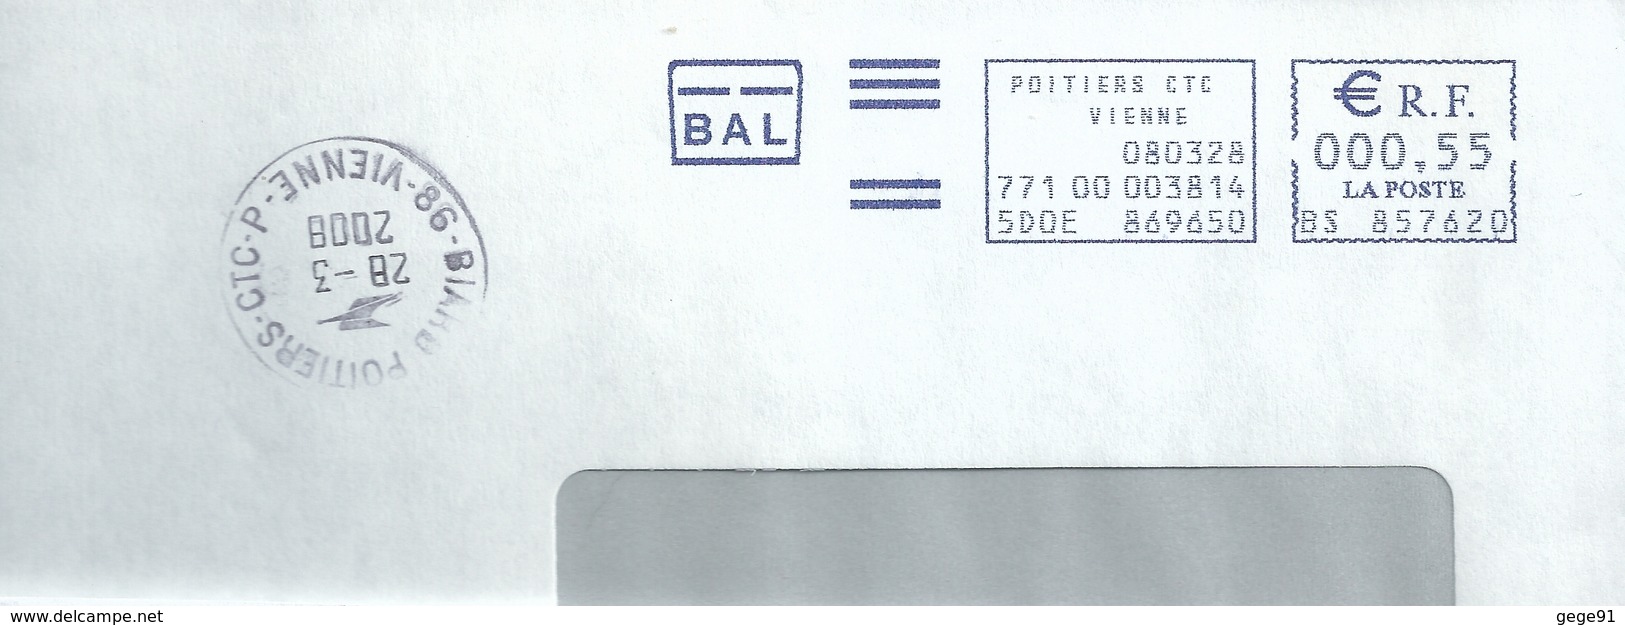 Cachet Manuel De Poitiers CTC P - Sur Ema Pitney Bowes BS - Enveloppe Entière - Manual Postmarks